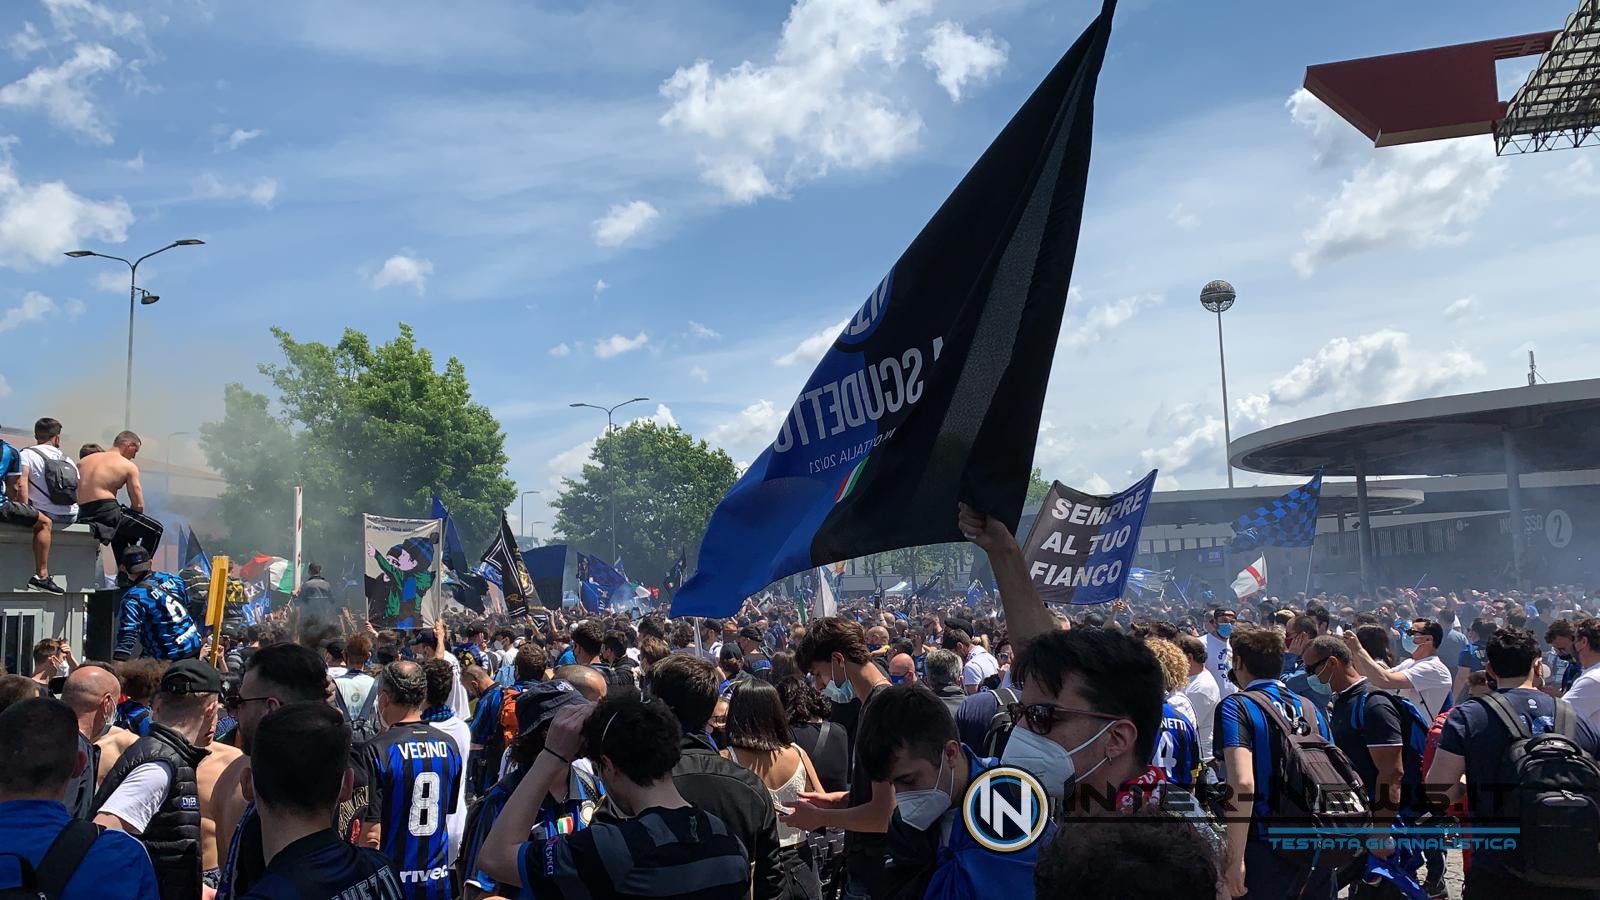 Inter, la festa scudetto continua post Lazio! Annunciati artisti d’eccezione